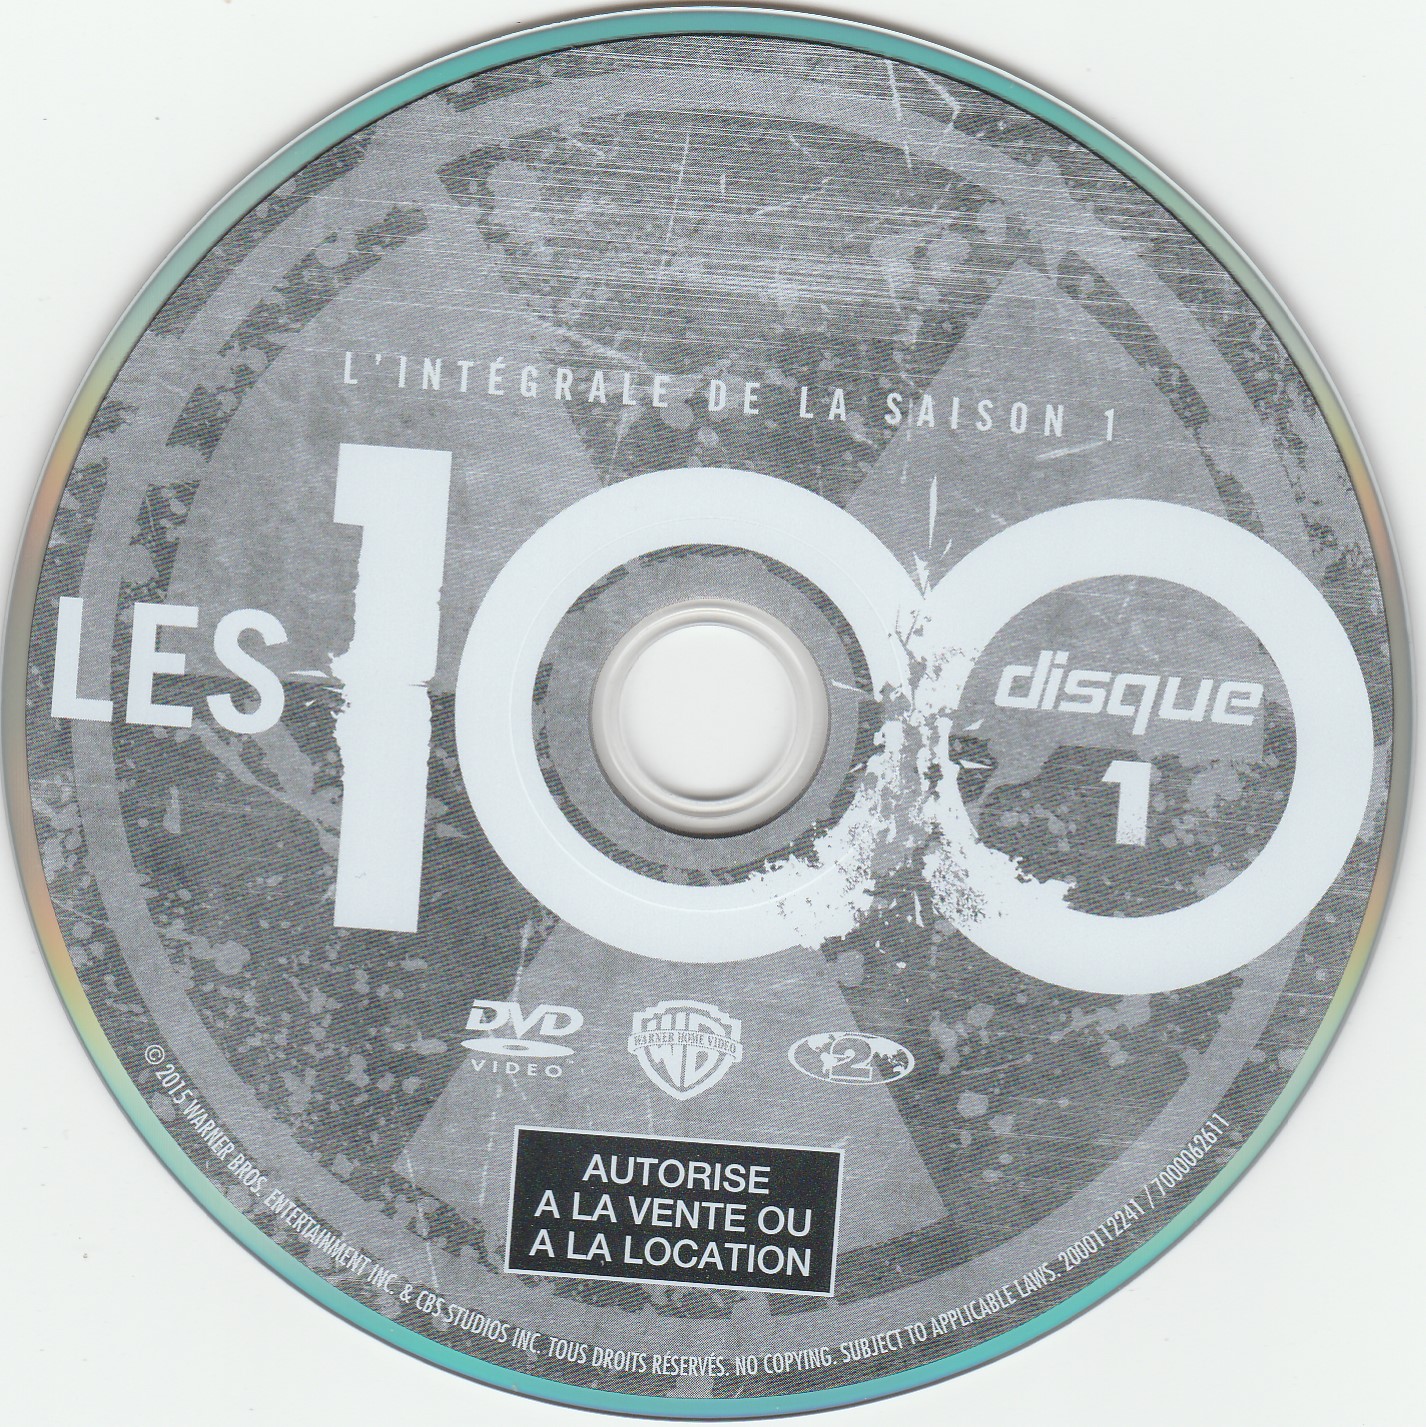 Les 100 Saison 1 DISC 1